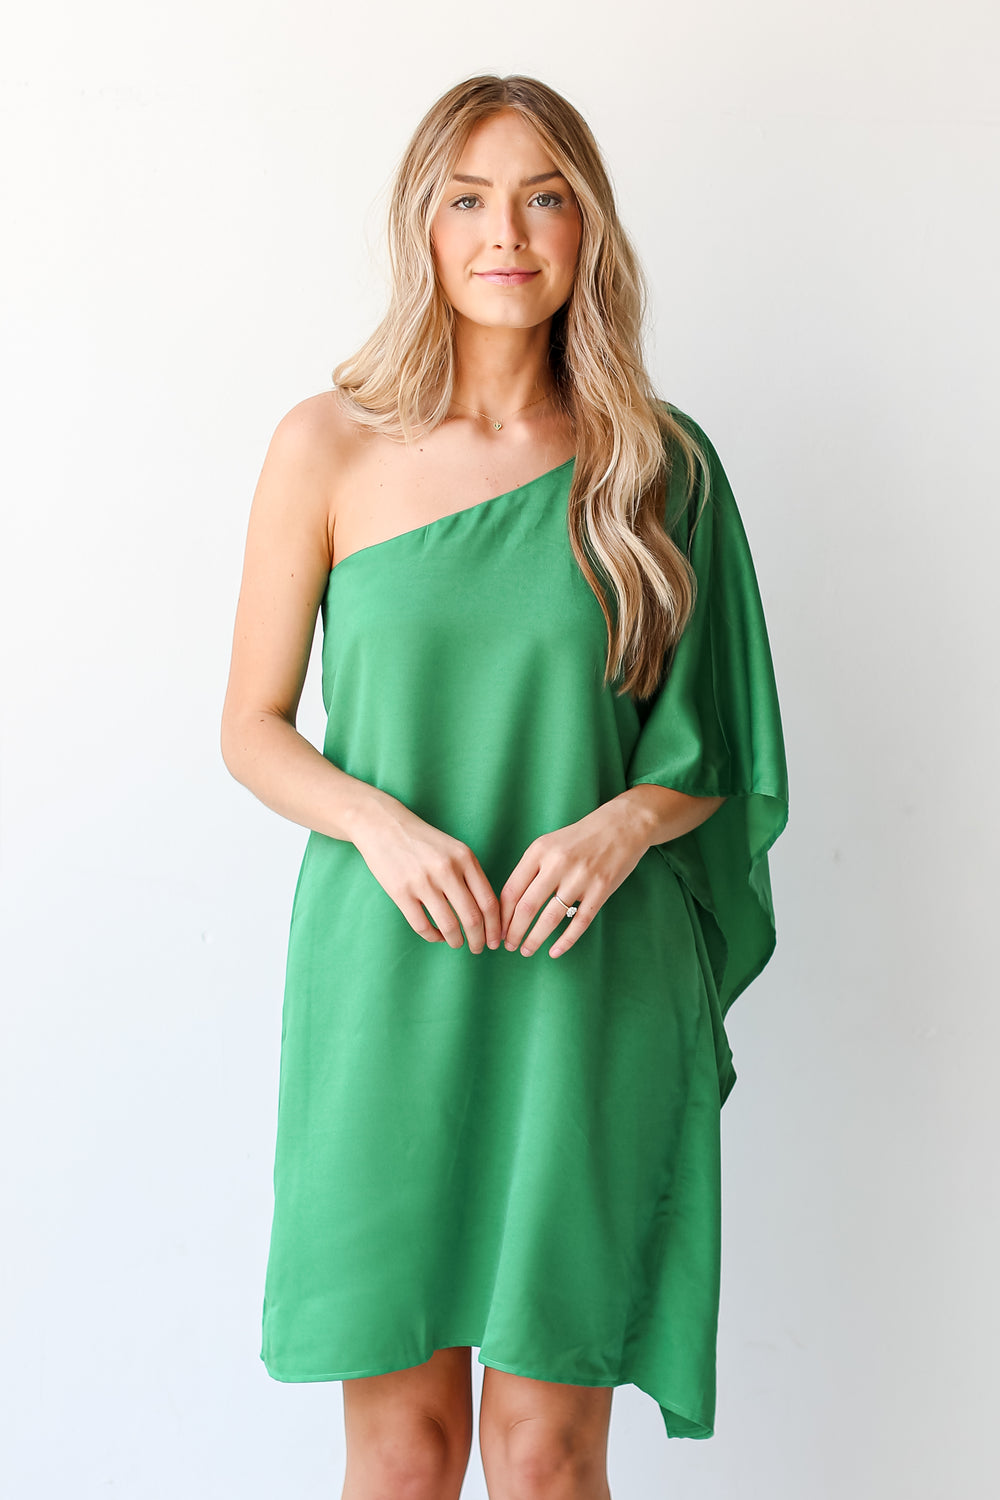 green One-Shoulder Mini Dress on model. Boutique Dresses. Online Dresses